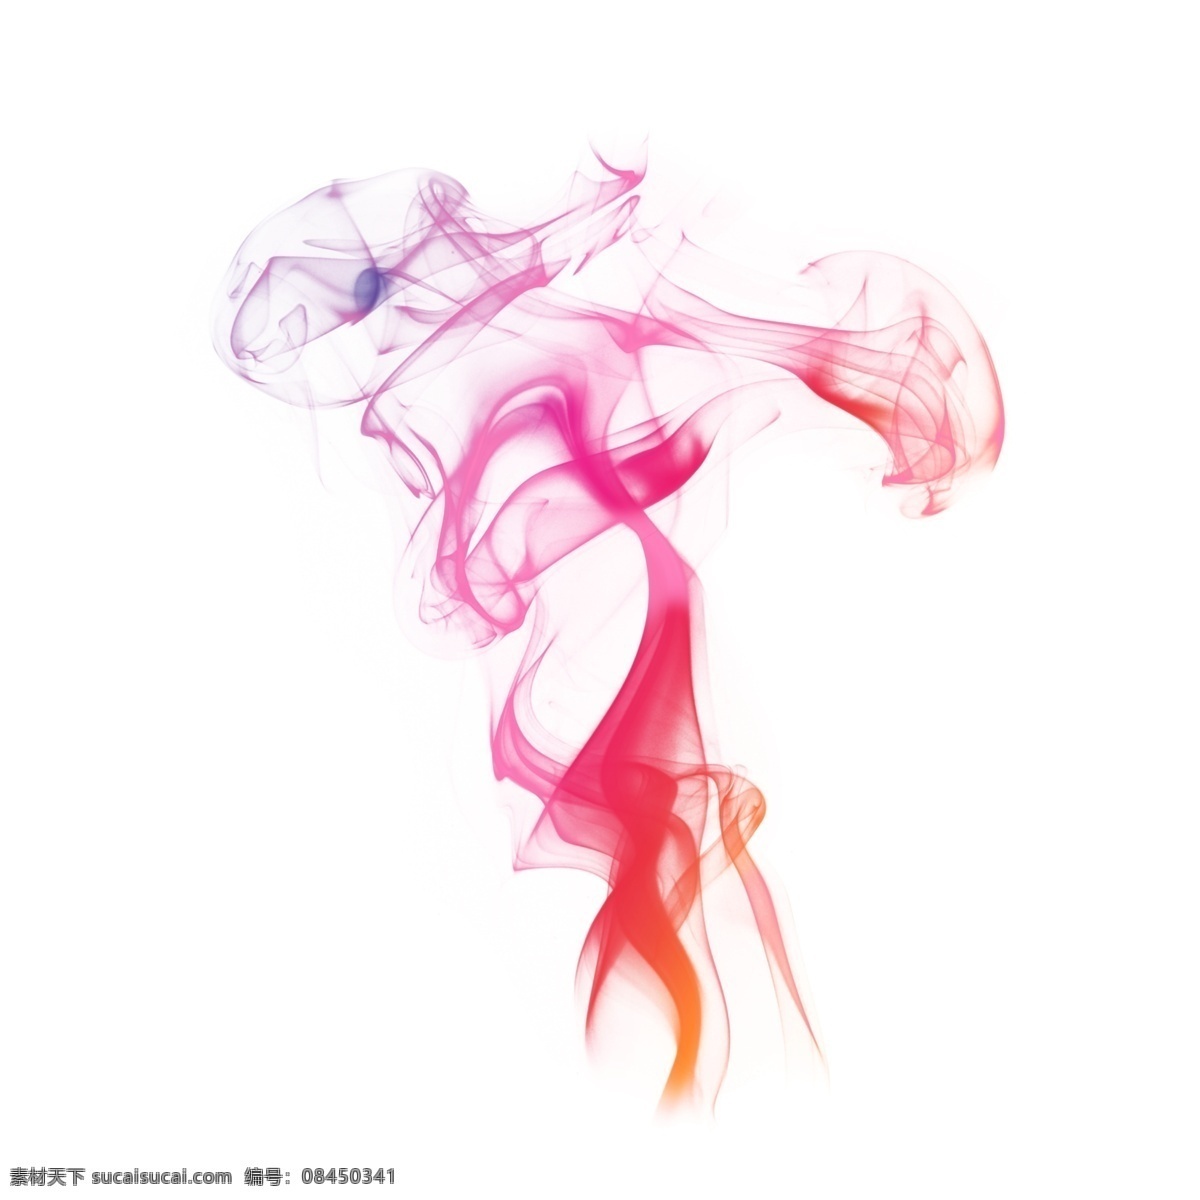 彩色 烟雾 青烟 蒸腾 免 抠 团 雾 蒸汽 炫彩 缭绕 漂浮 中国风 书画 创意 手绘 抽象 水彩 泼墨 烟熏 环绕 绘画 绚丽